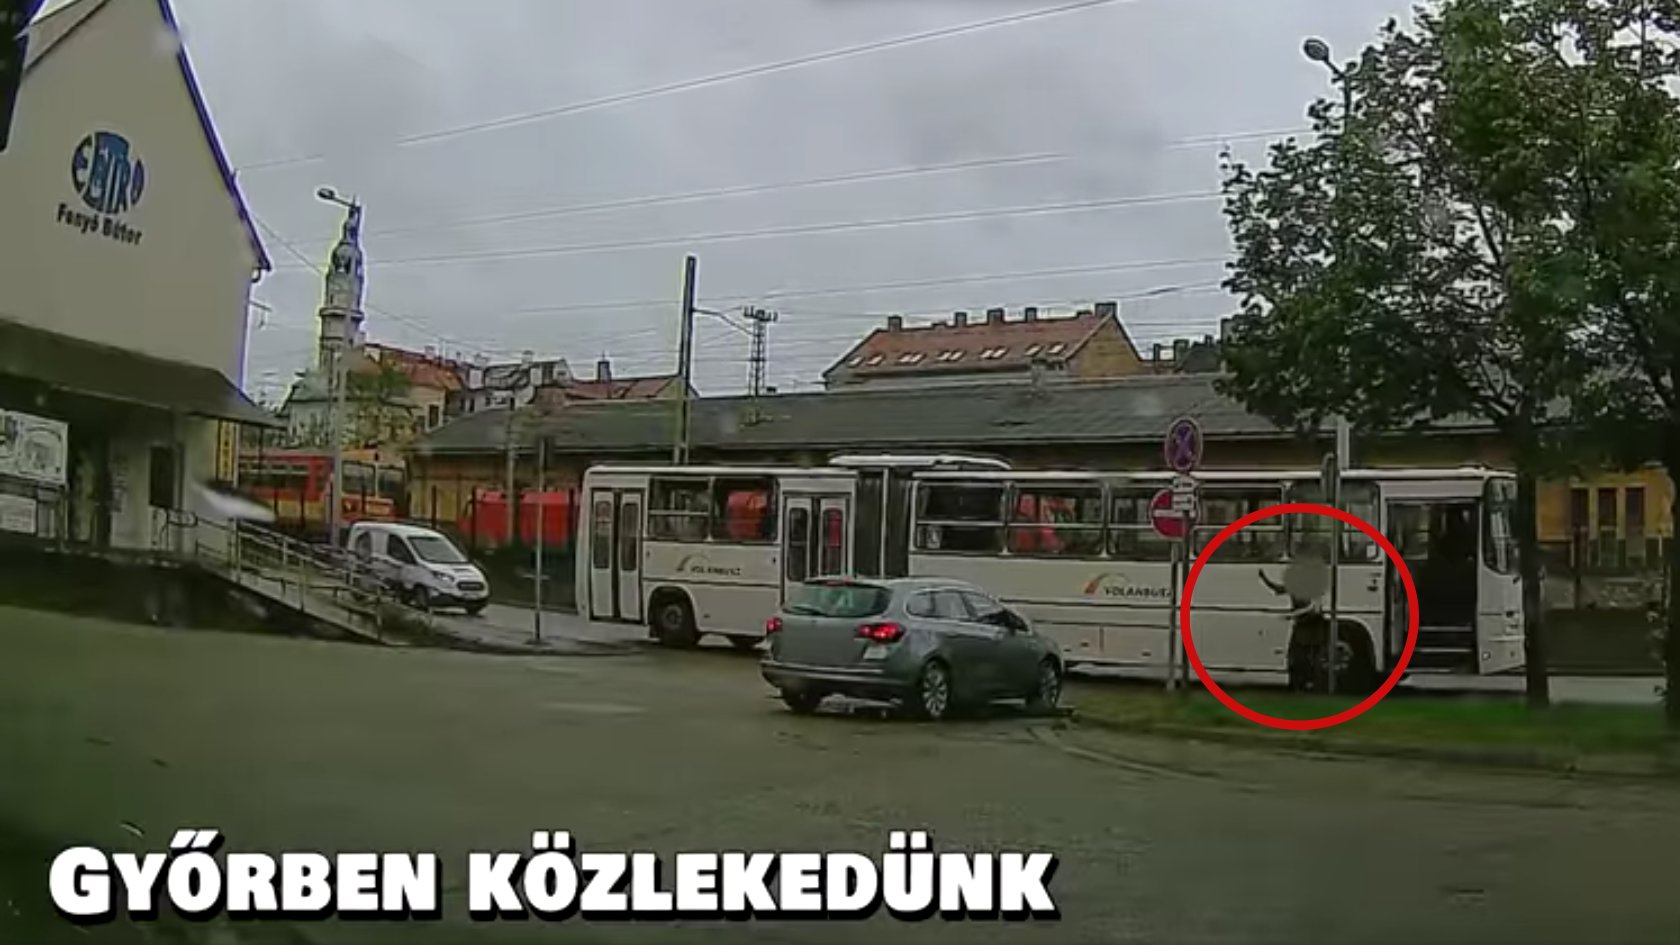 Dühösen ugrott le a sofőr a buszról, miután majdnem összeütköztek egy szabálytalan autóssal Győrben